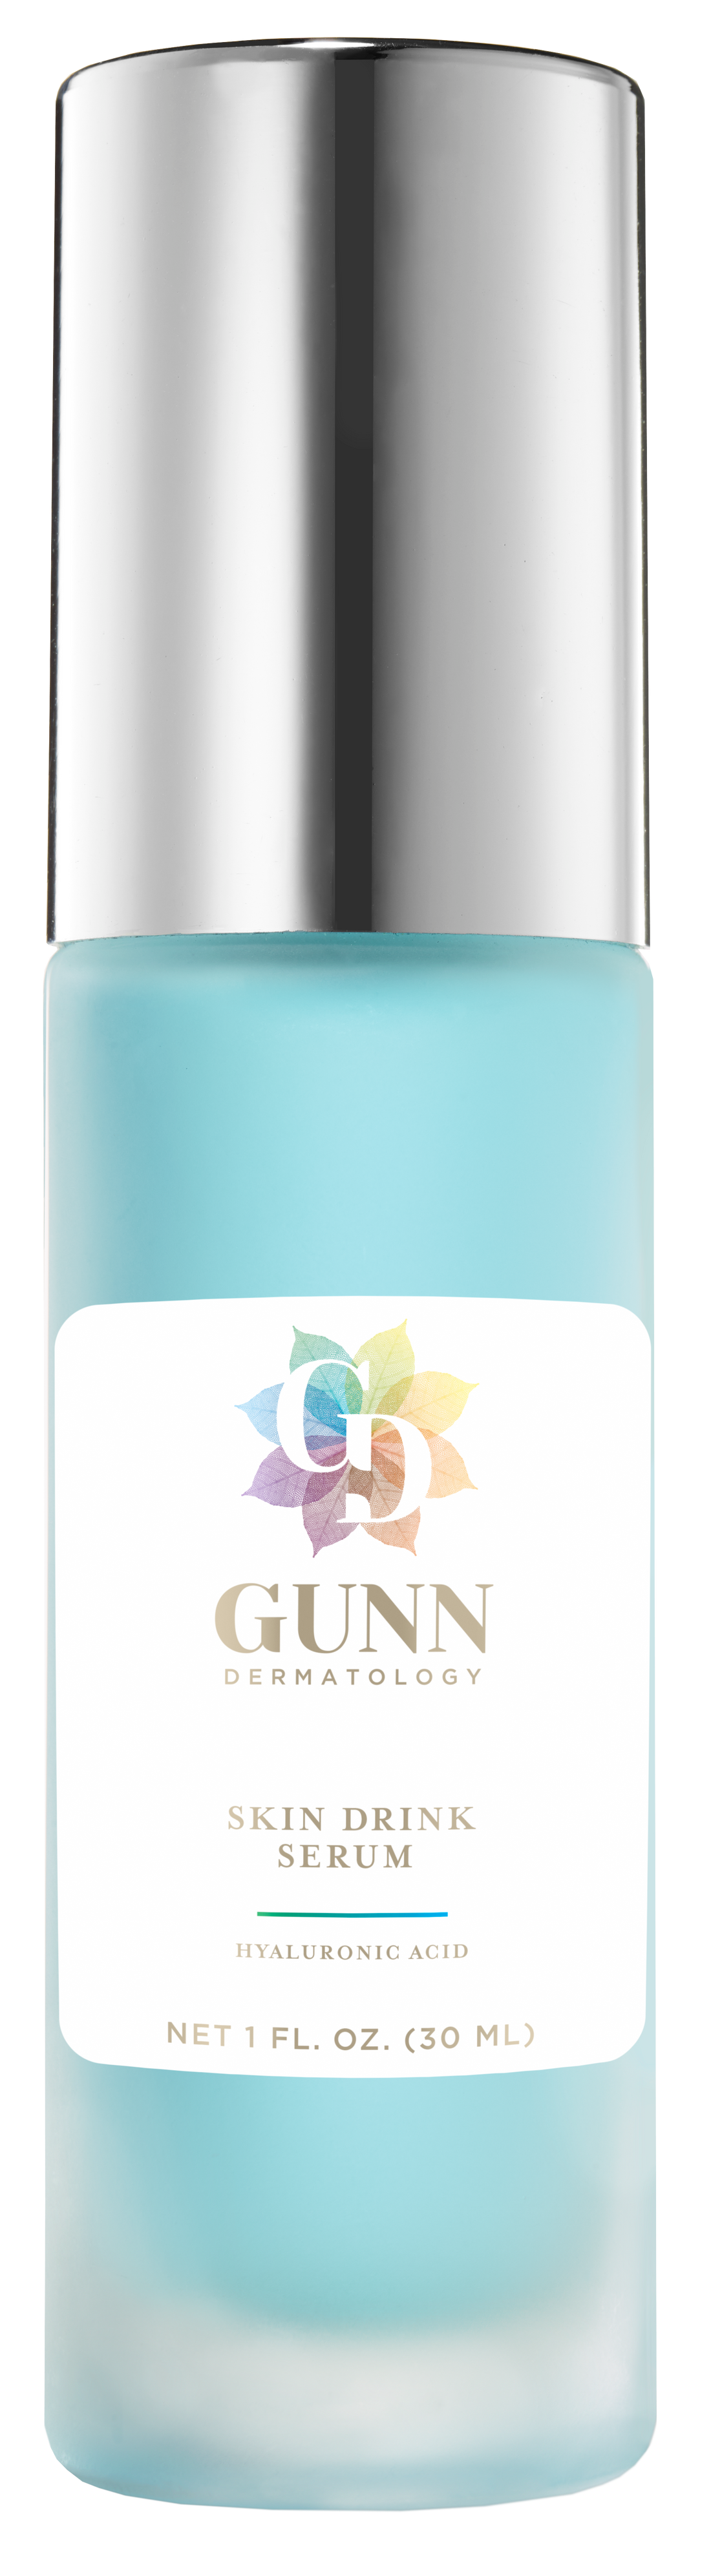 Gunn Dermatology Skin Drink Serum